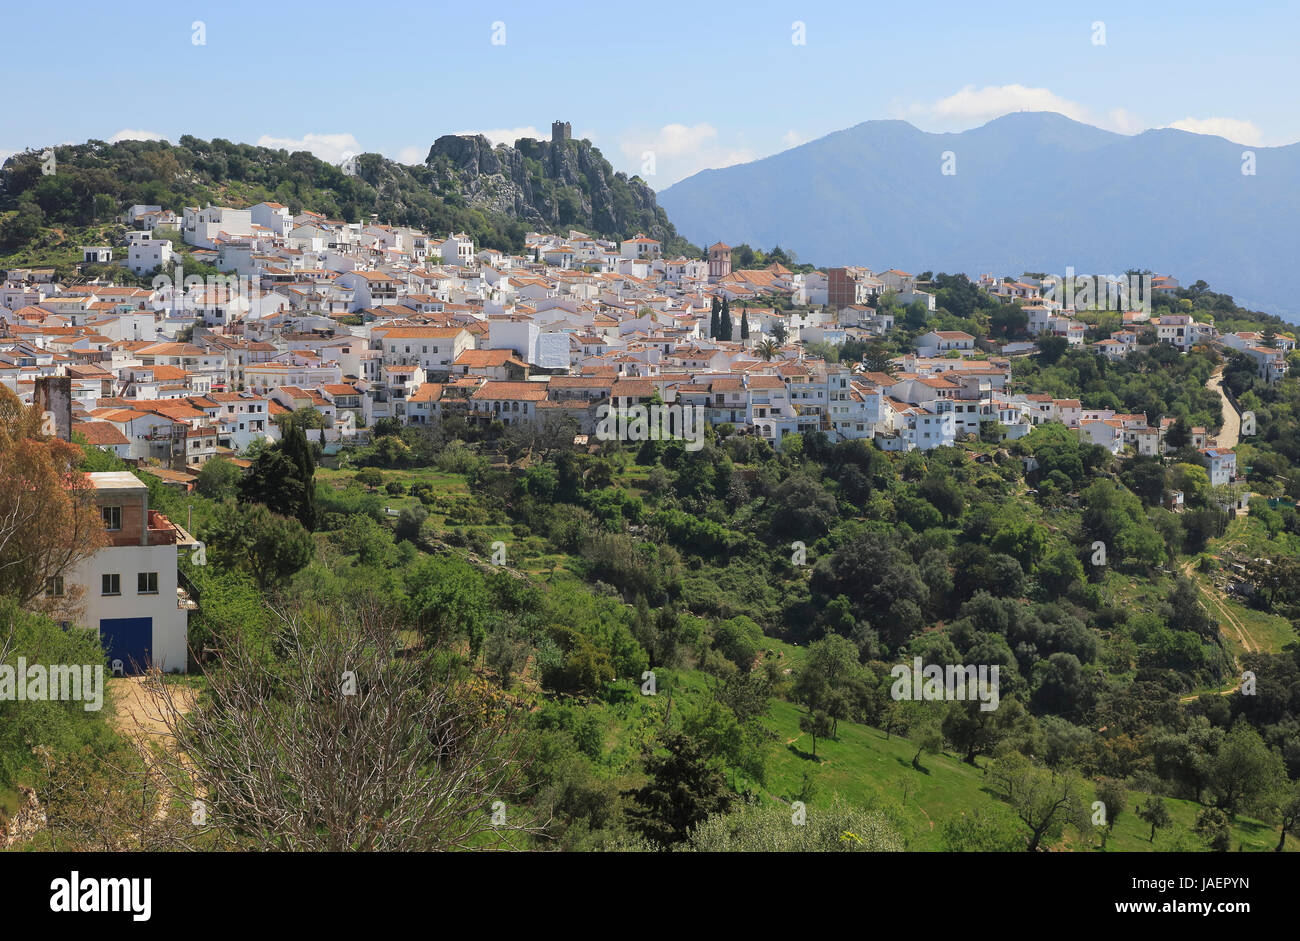 Hill top village de Gaucin, province de Malaga, au sud de l'Espagne Banque D'Images